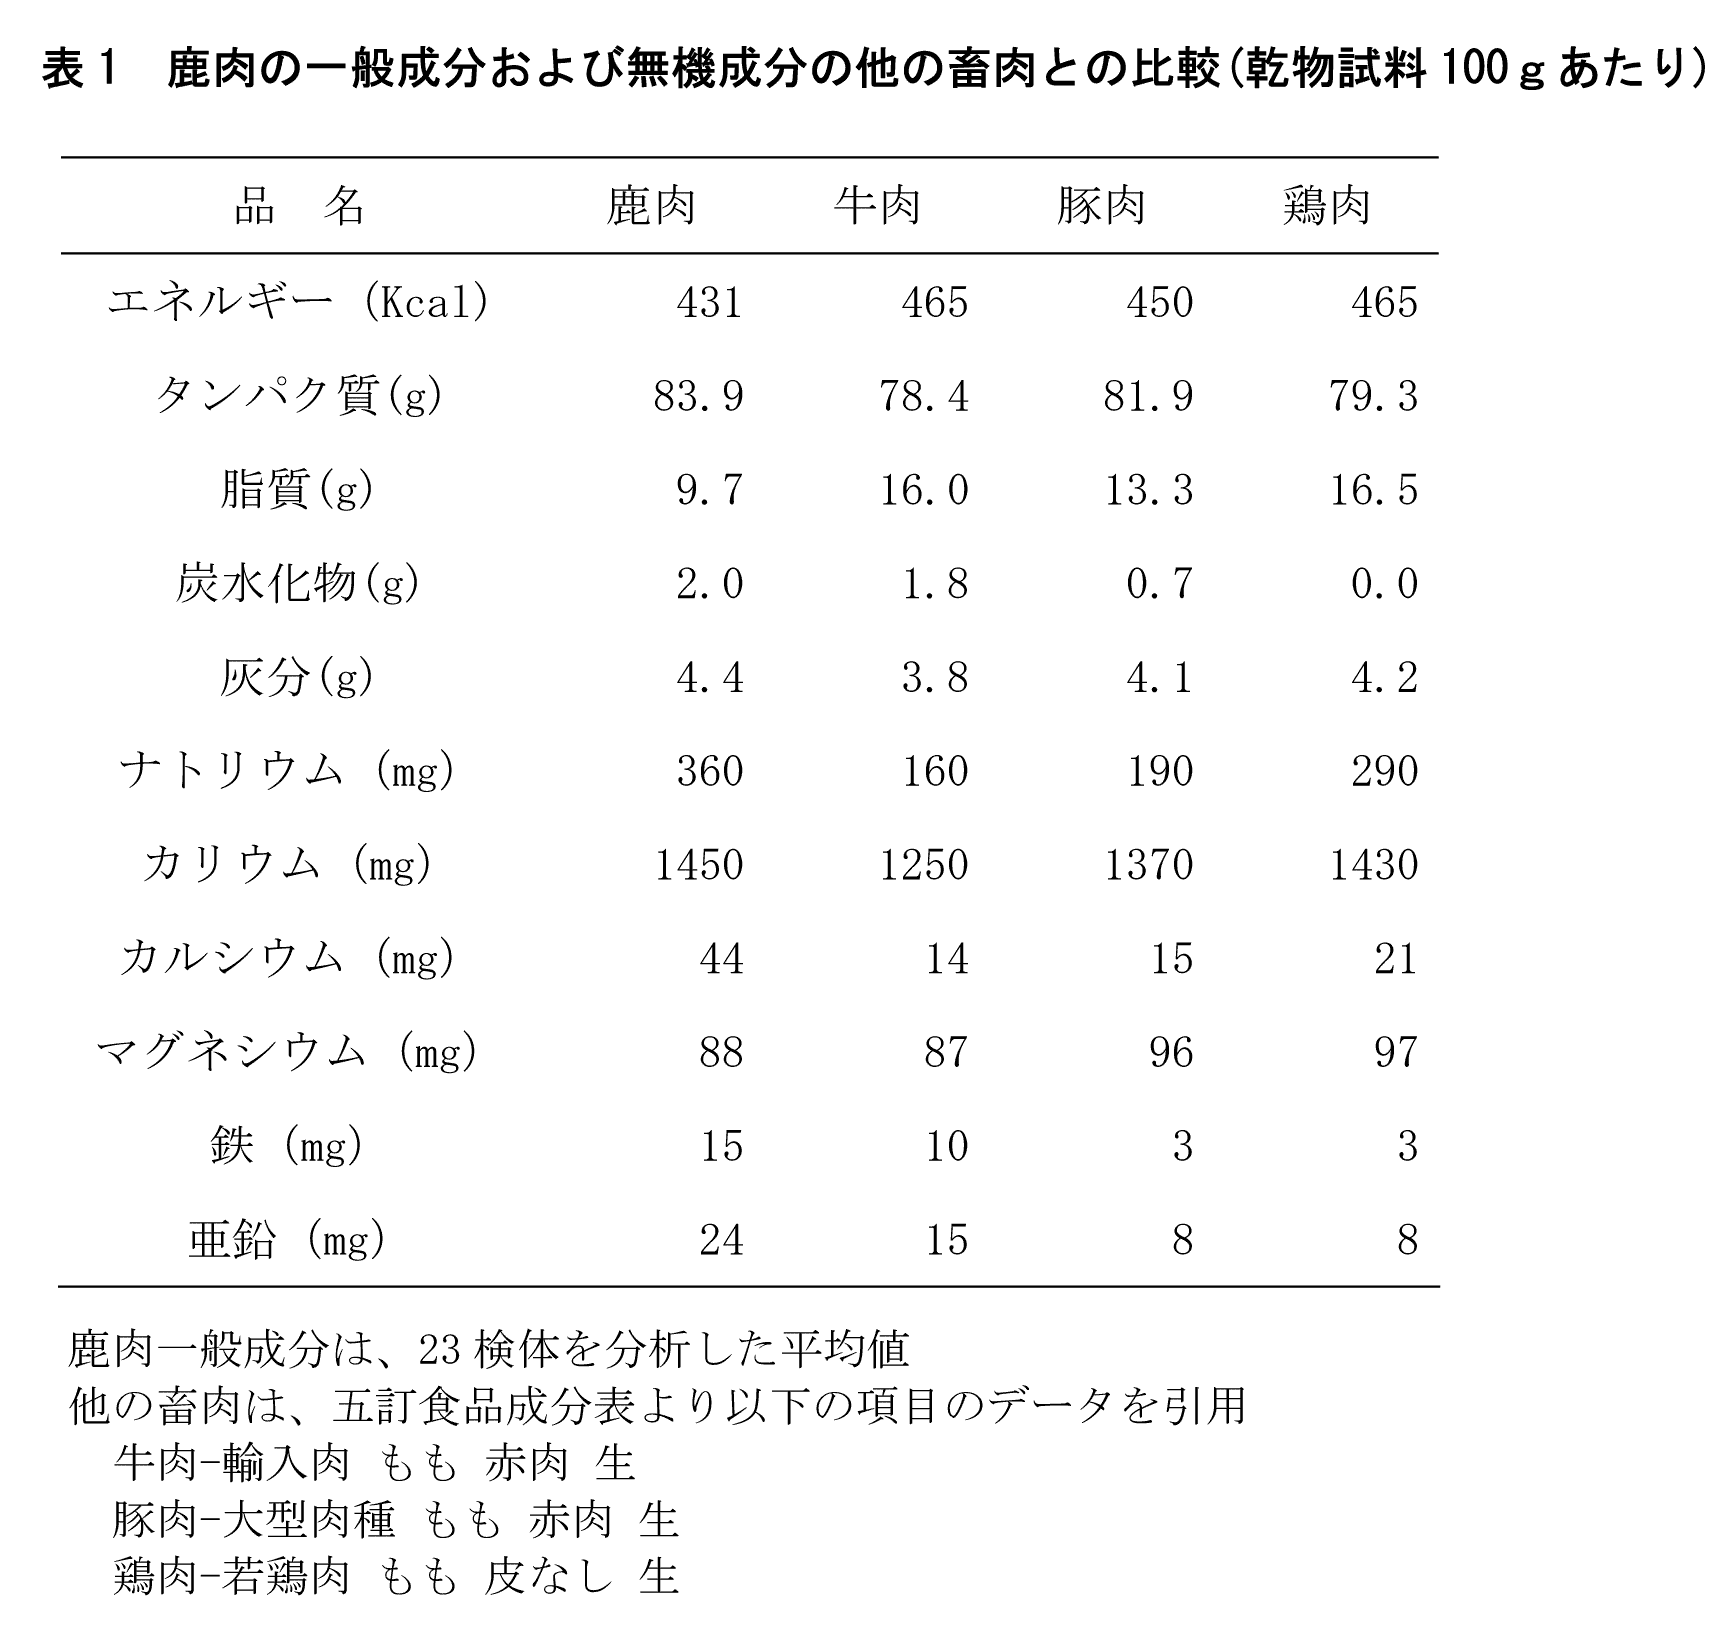 信州ジビエ長野県産鹿肉の栄養成分分析結果です